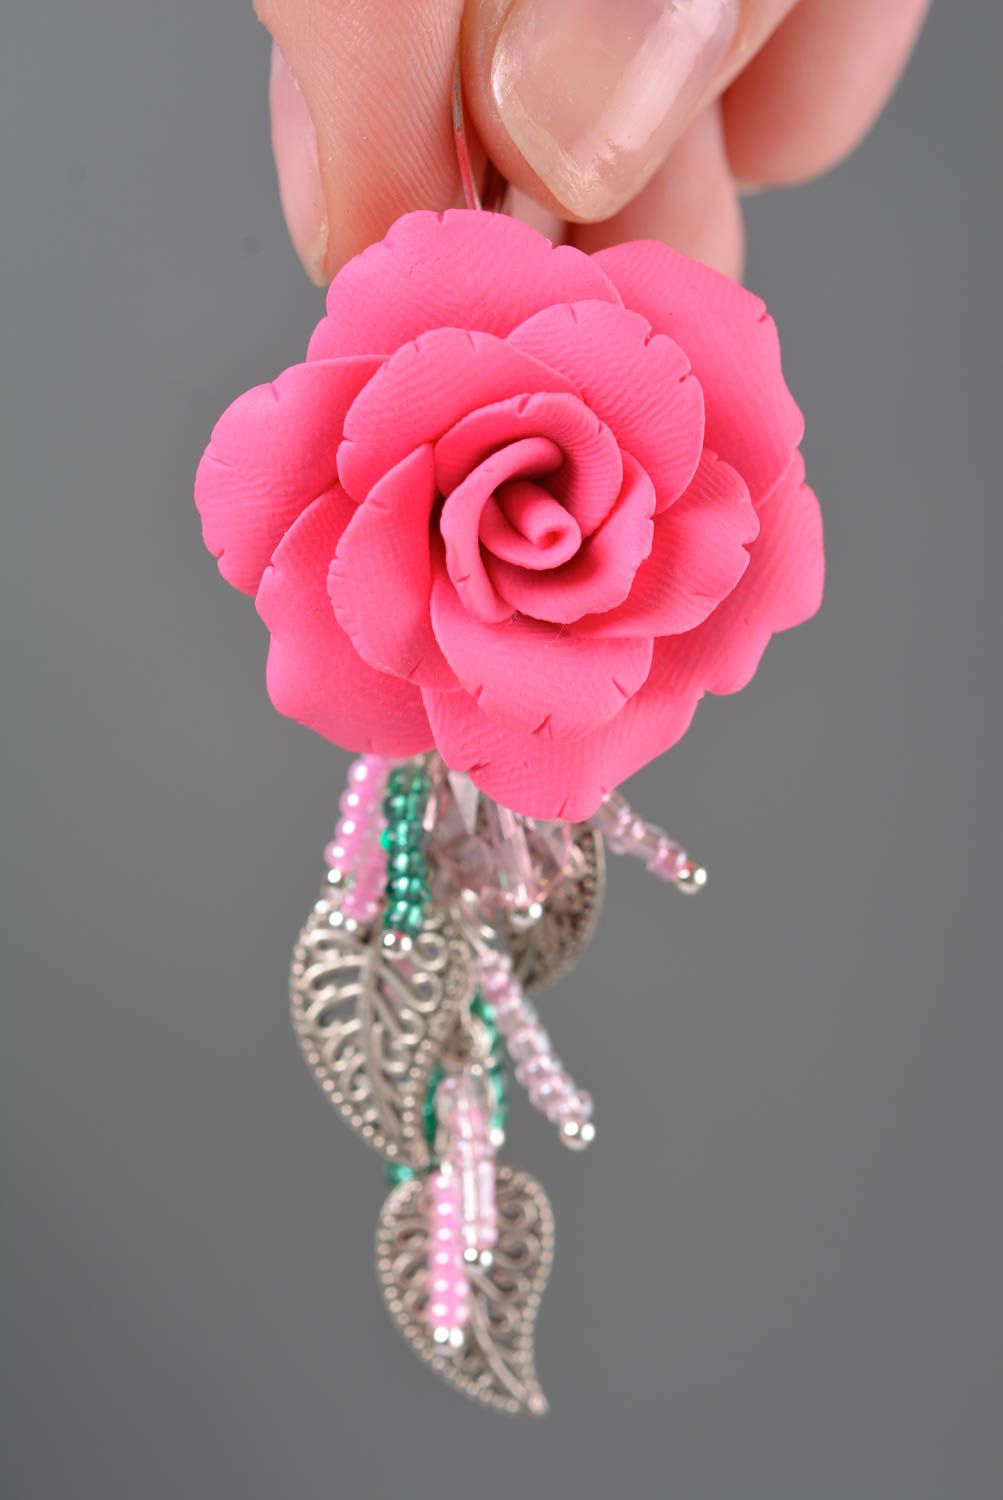 Серьги с подвесками в виде роз из полимерной глины и бисера аксессуар хенд мейд фото 2